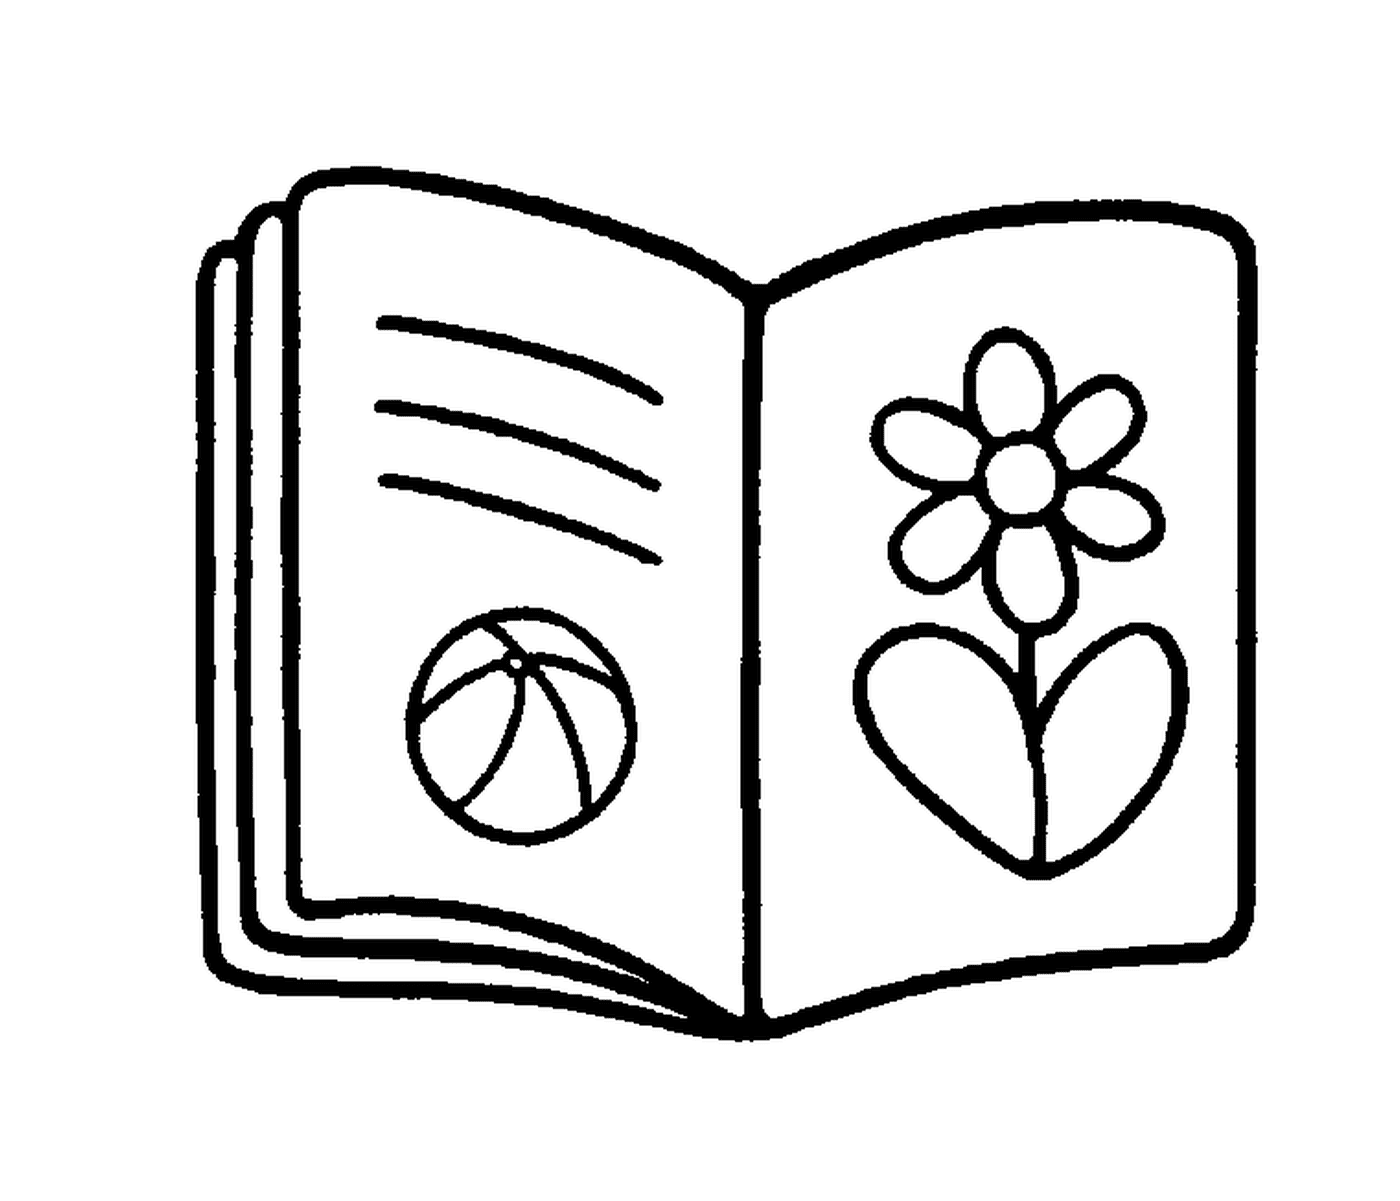  Livro aberto com flor e balão 